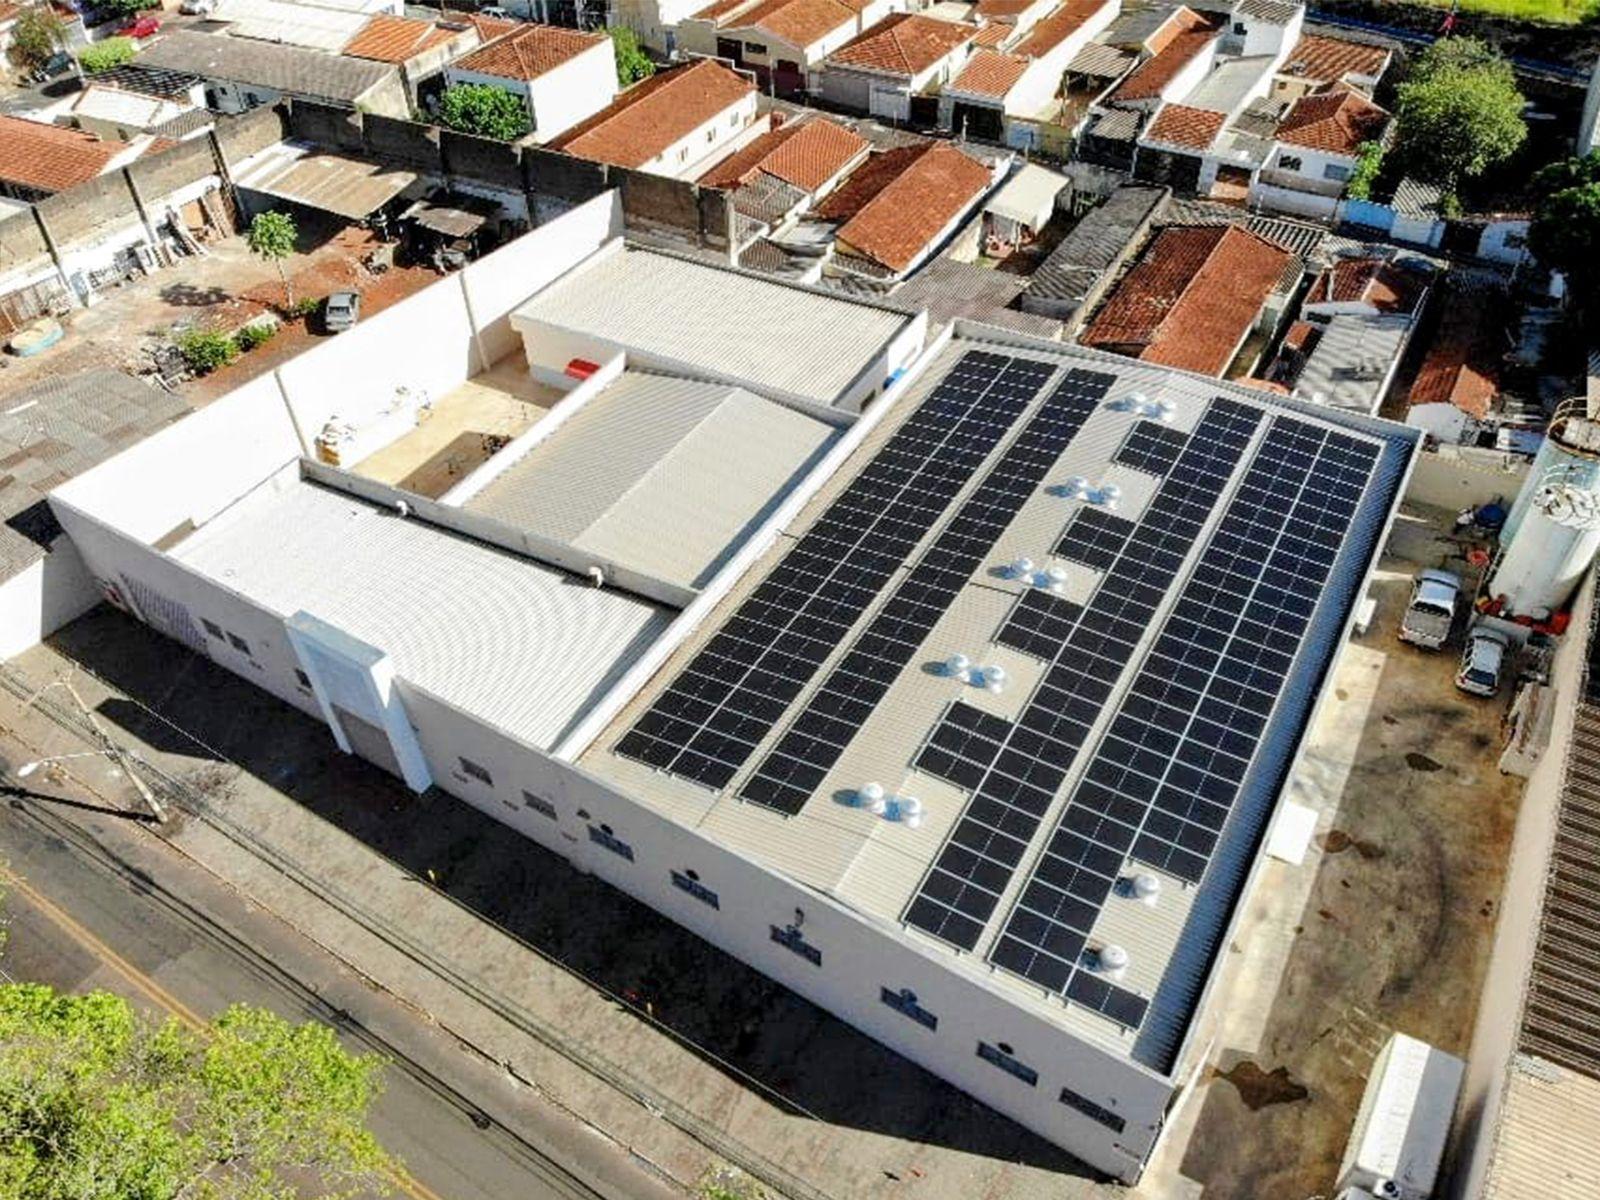 170 panneaux photovoltaïques installés sur le toit portent la taille totale du système à 90,1 kW à Ribeirão Preto-SP, au Brésil (1)